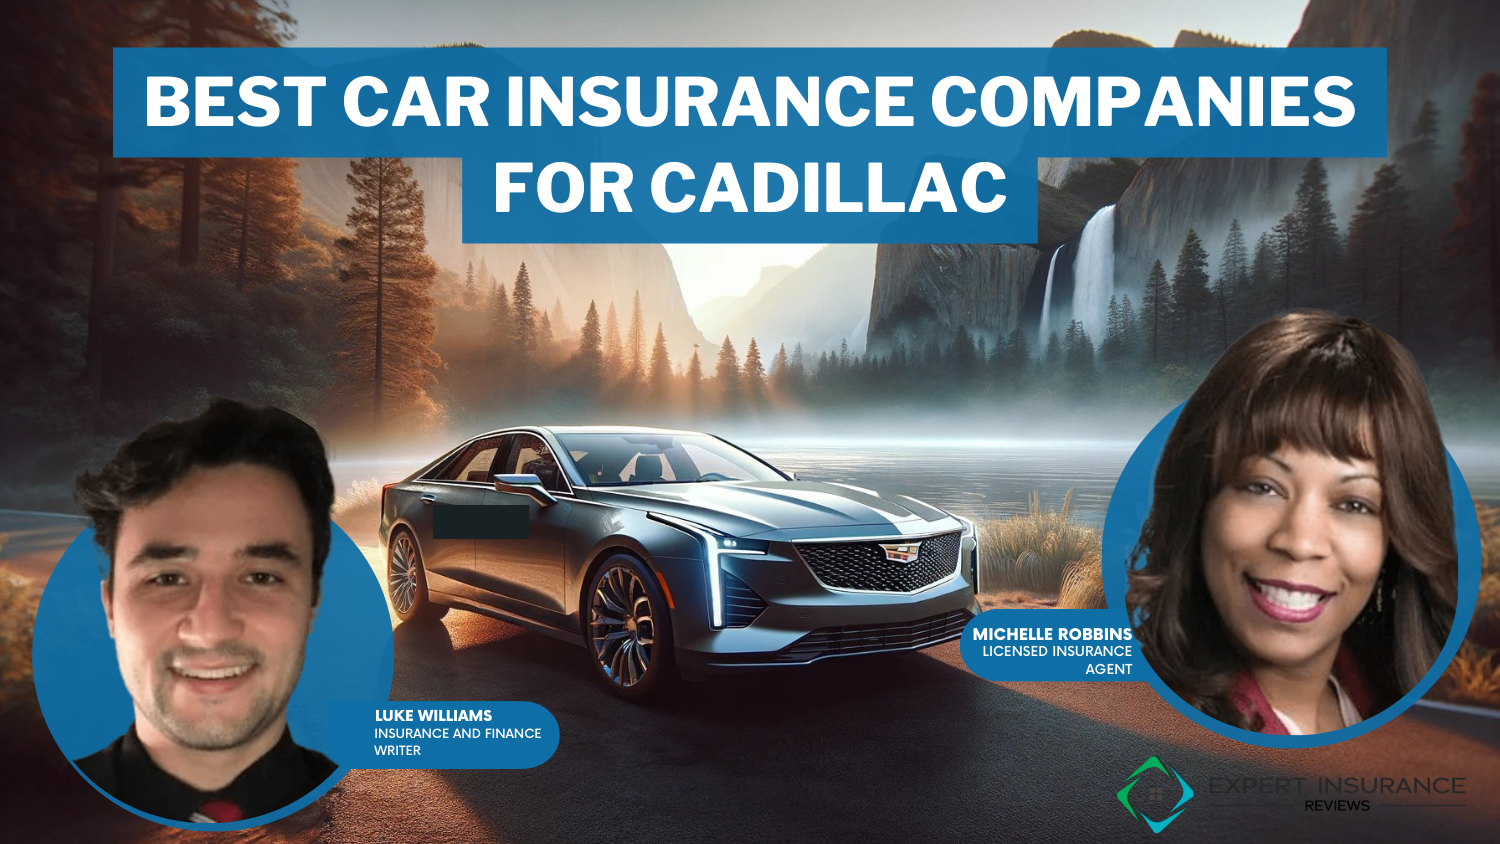 Best Car Insurance Companies for Cadillacs: USAA, State Farm, Geico